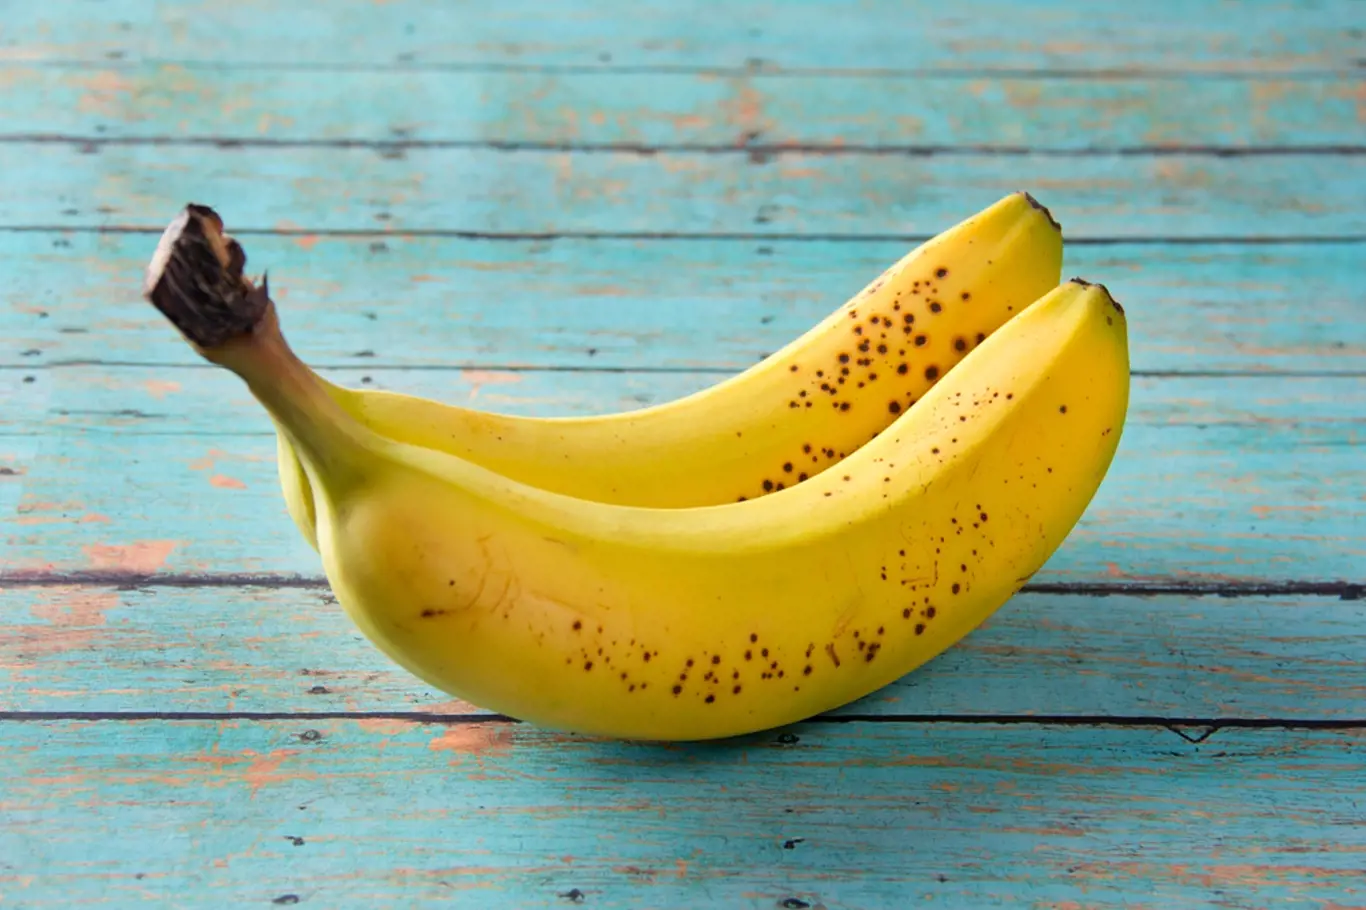 Nejchutnější jsou plně vyzrálé banány.